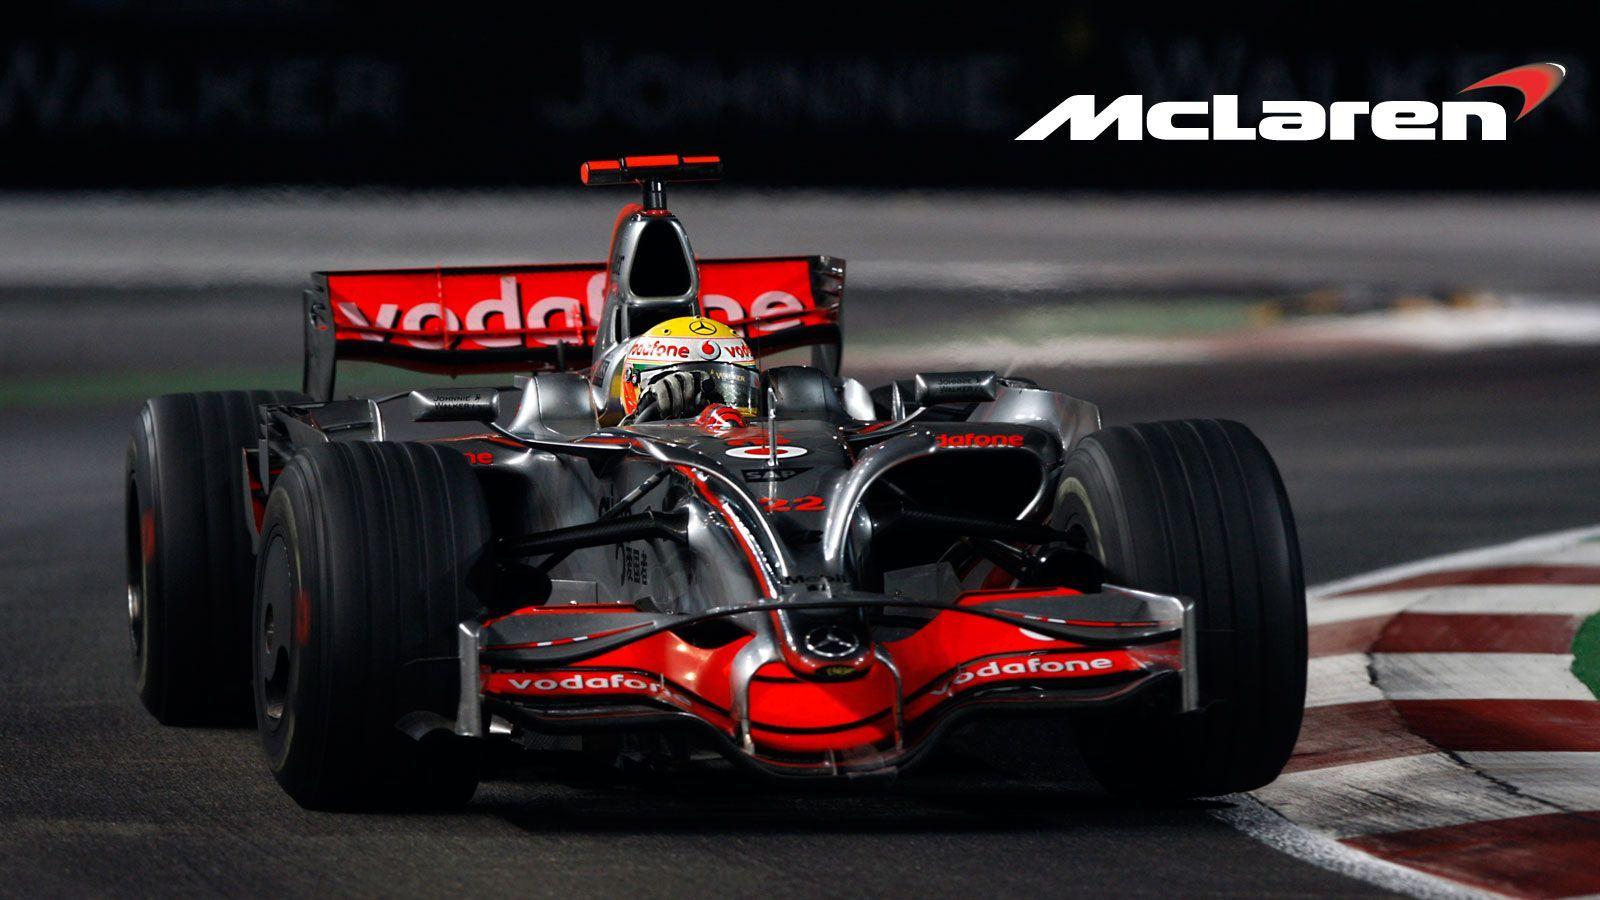 2016 McLaren F1 Logo - F1 needs to look'